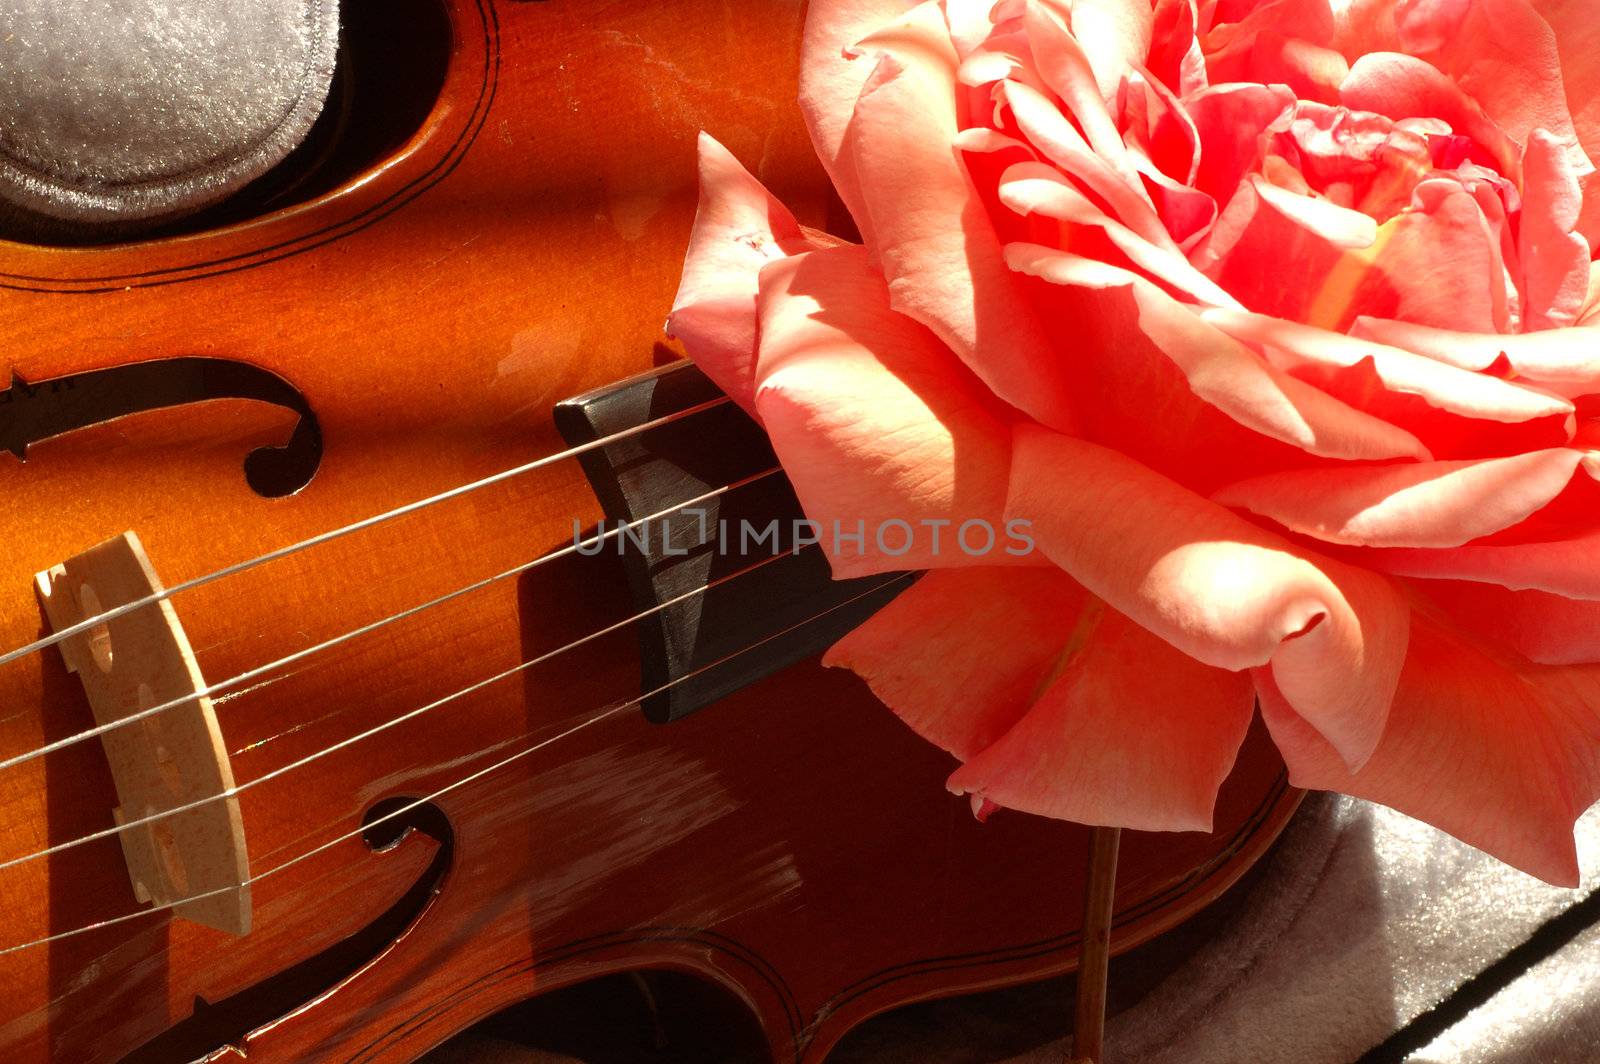 Large pink rose on a Violin